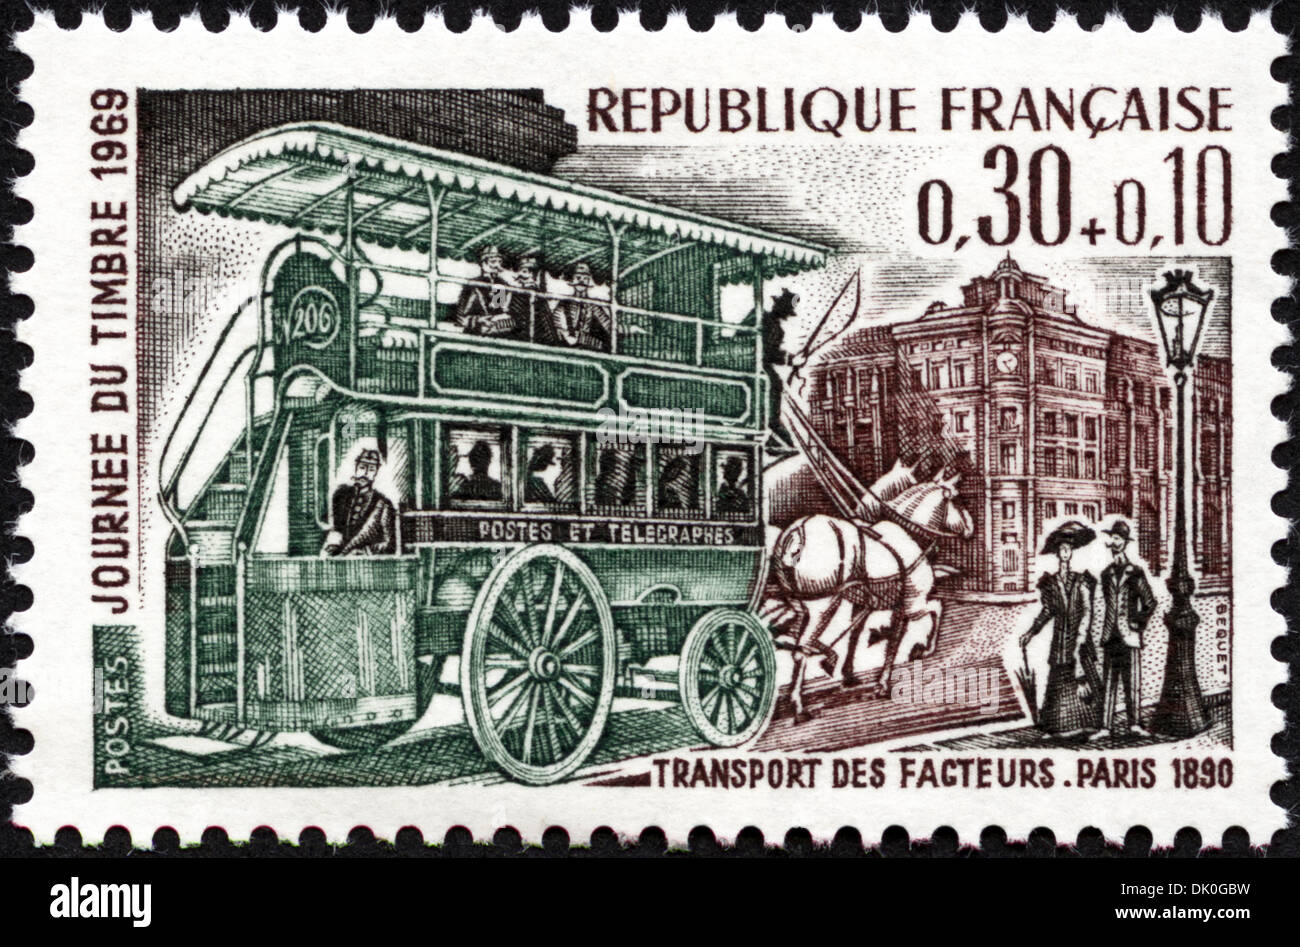 Francobollo Repubblica francese 0,30+0,10 con Post il trasporto con autobus rilasciato 1969 Foto Stock